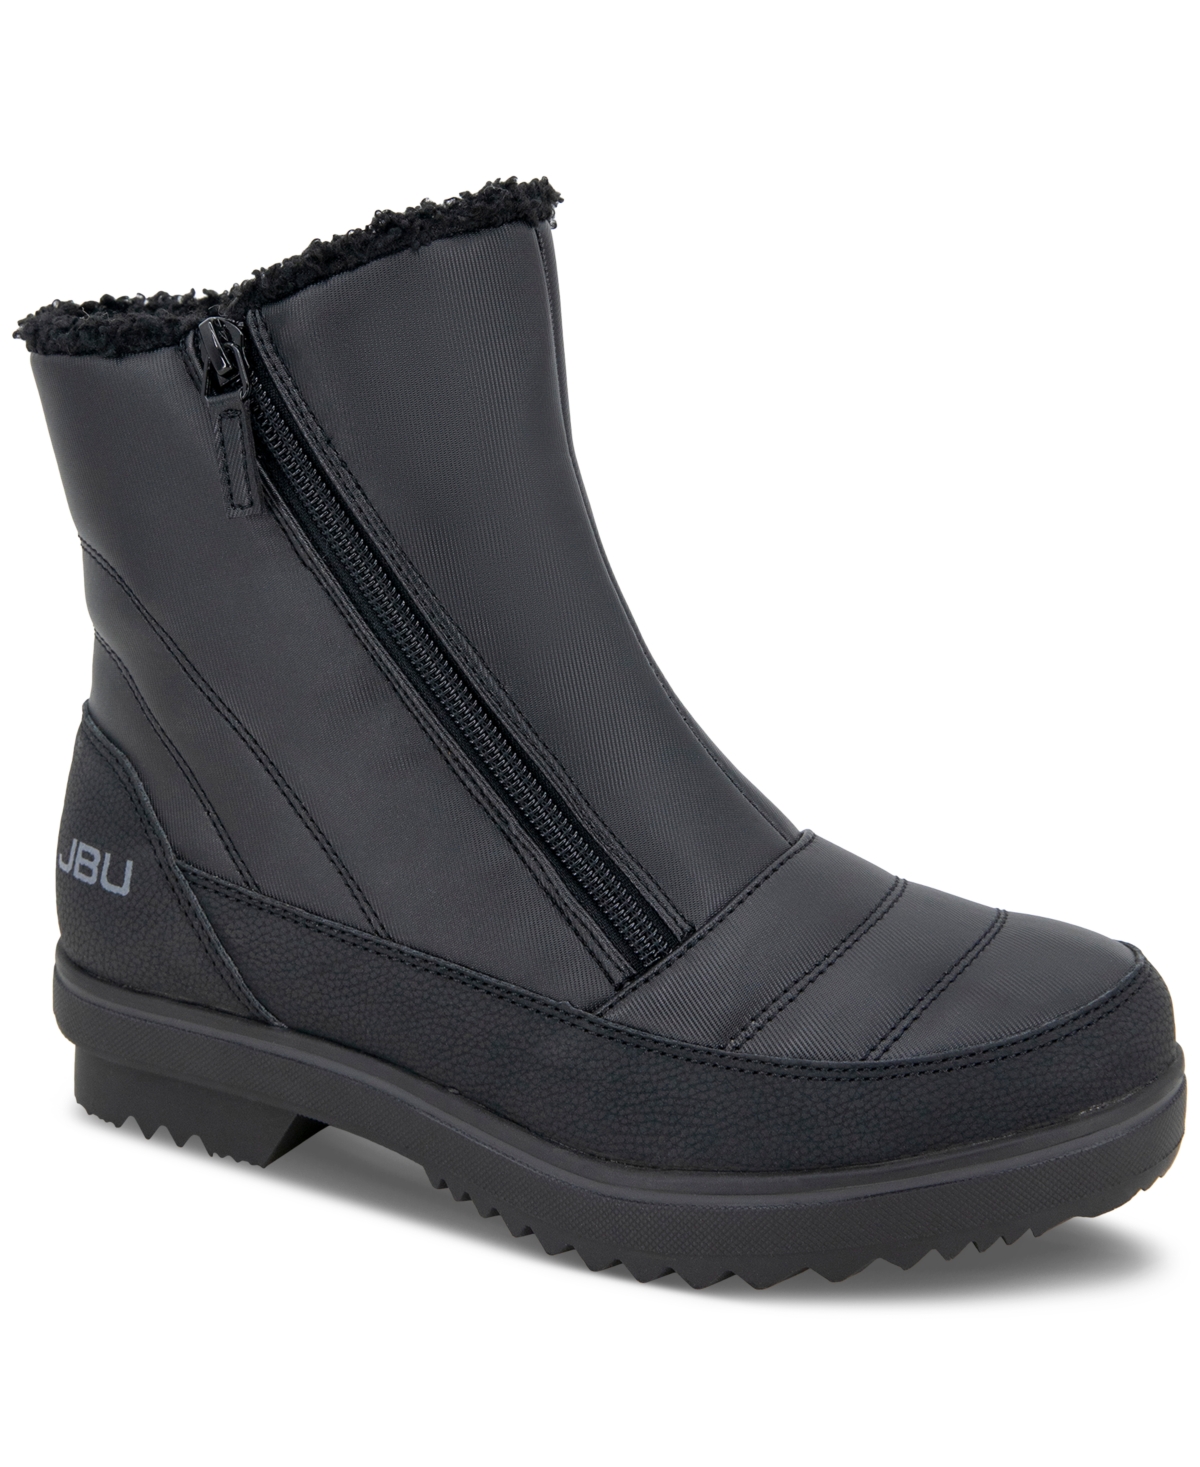 Women's Snowbound Zip Cold-Weather Boots - Black